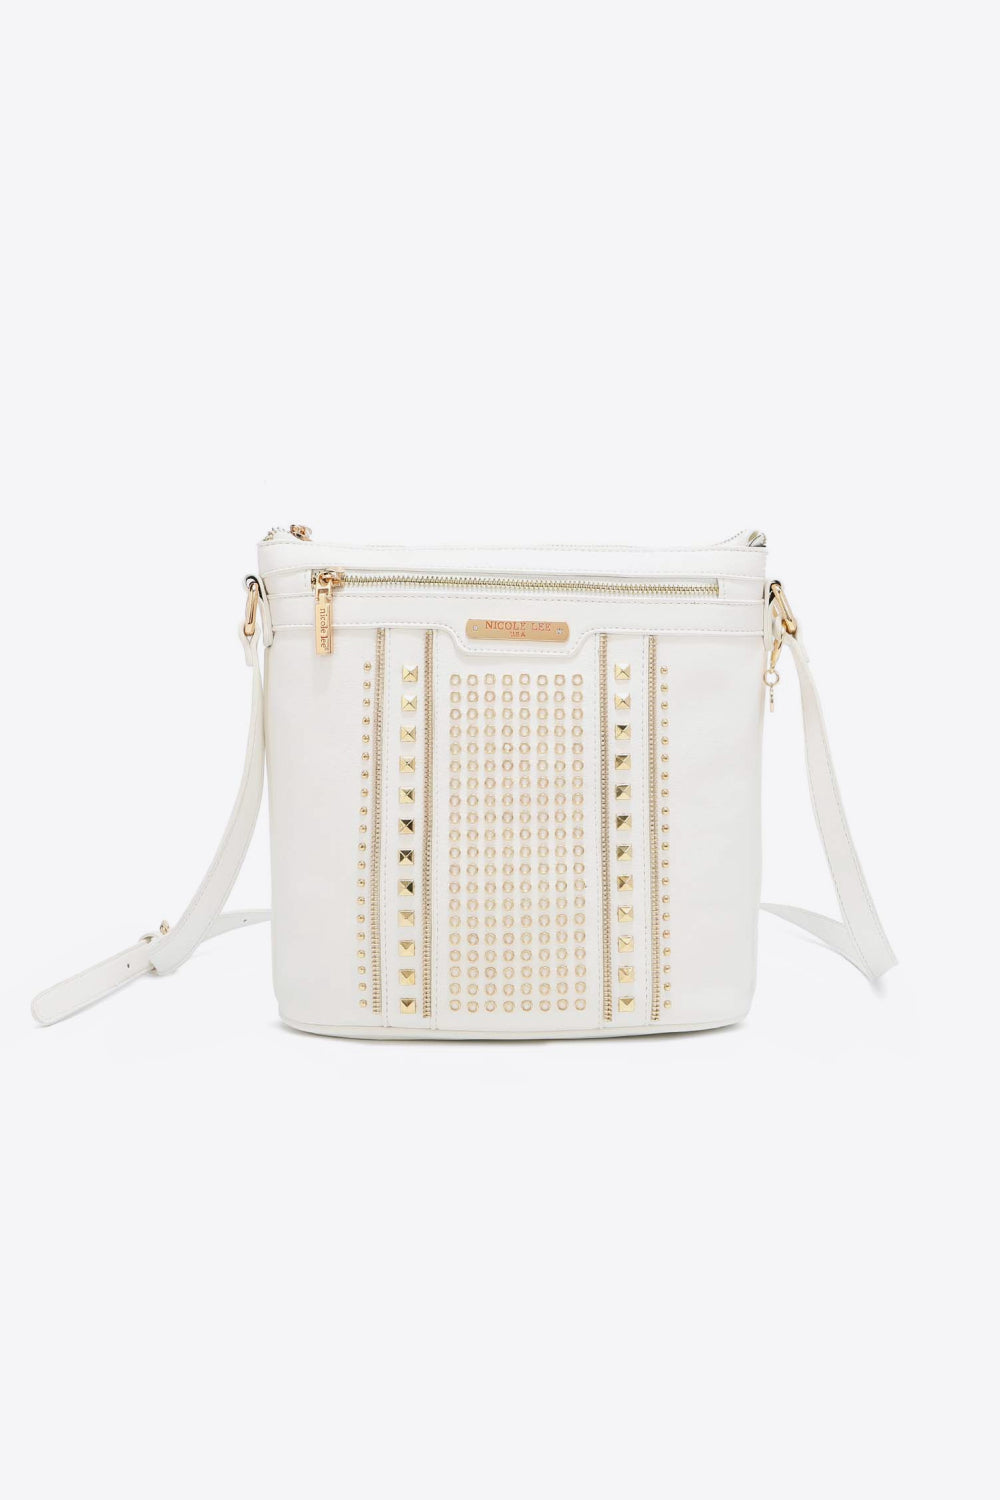 Nicole Lee USA Love Handbag-Trendsi-White-One Size-[option4]-[option5]-[option6]-[option7]-[option8]-Shop-Boutique-Clothing-for-Women-Online